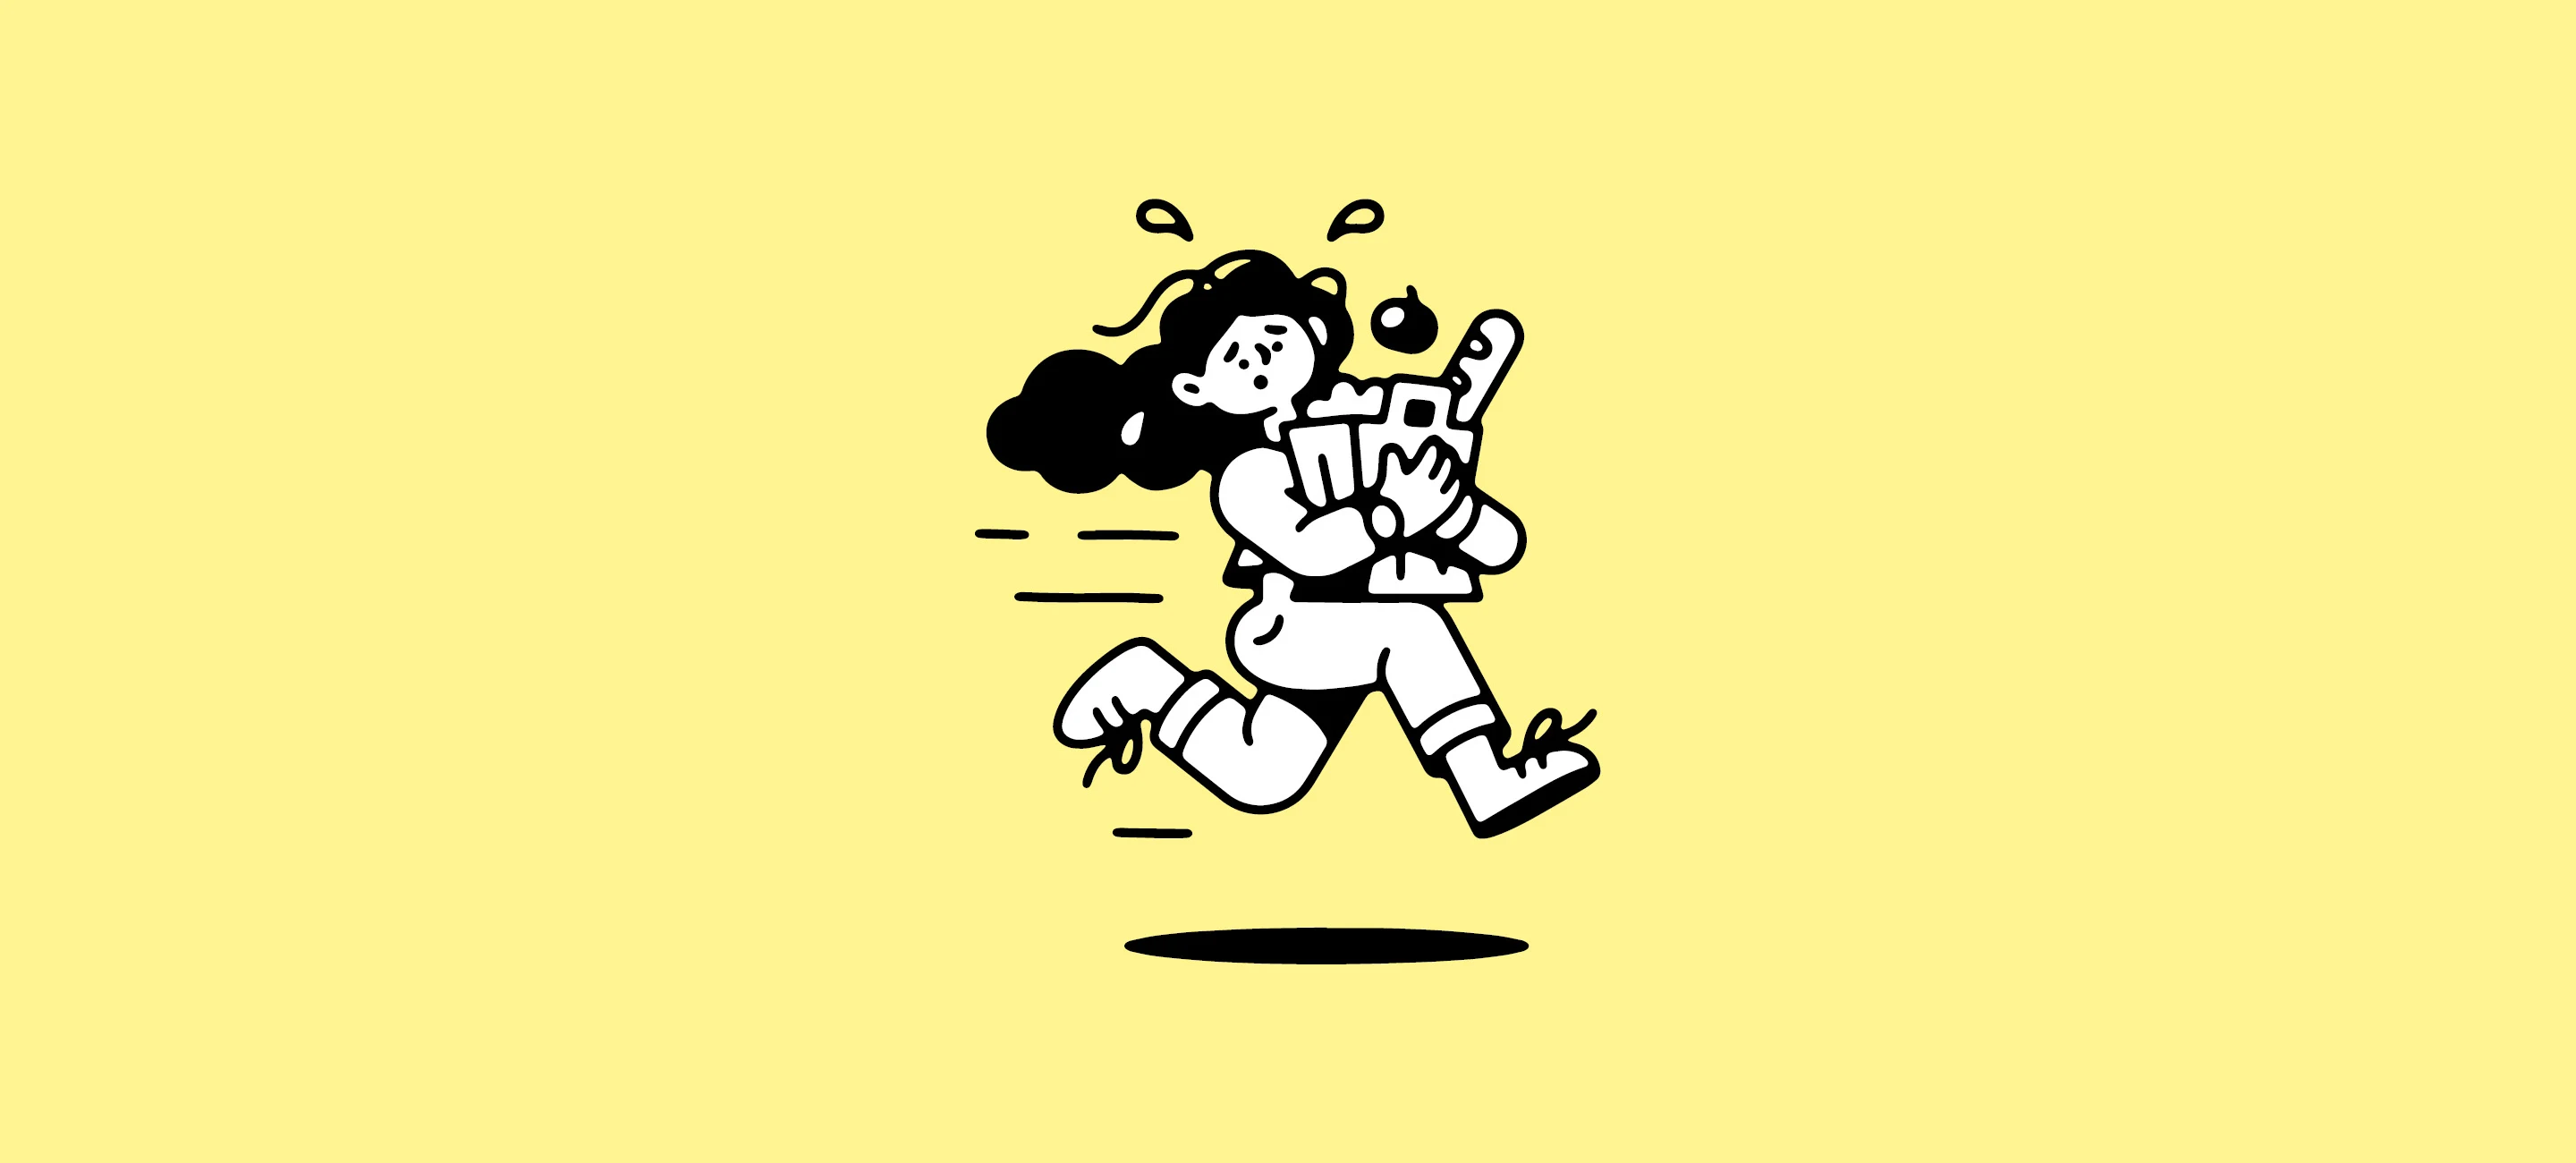 Illustration över stressad person som springer med matkasse